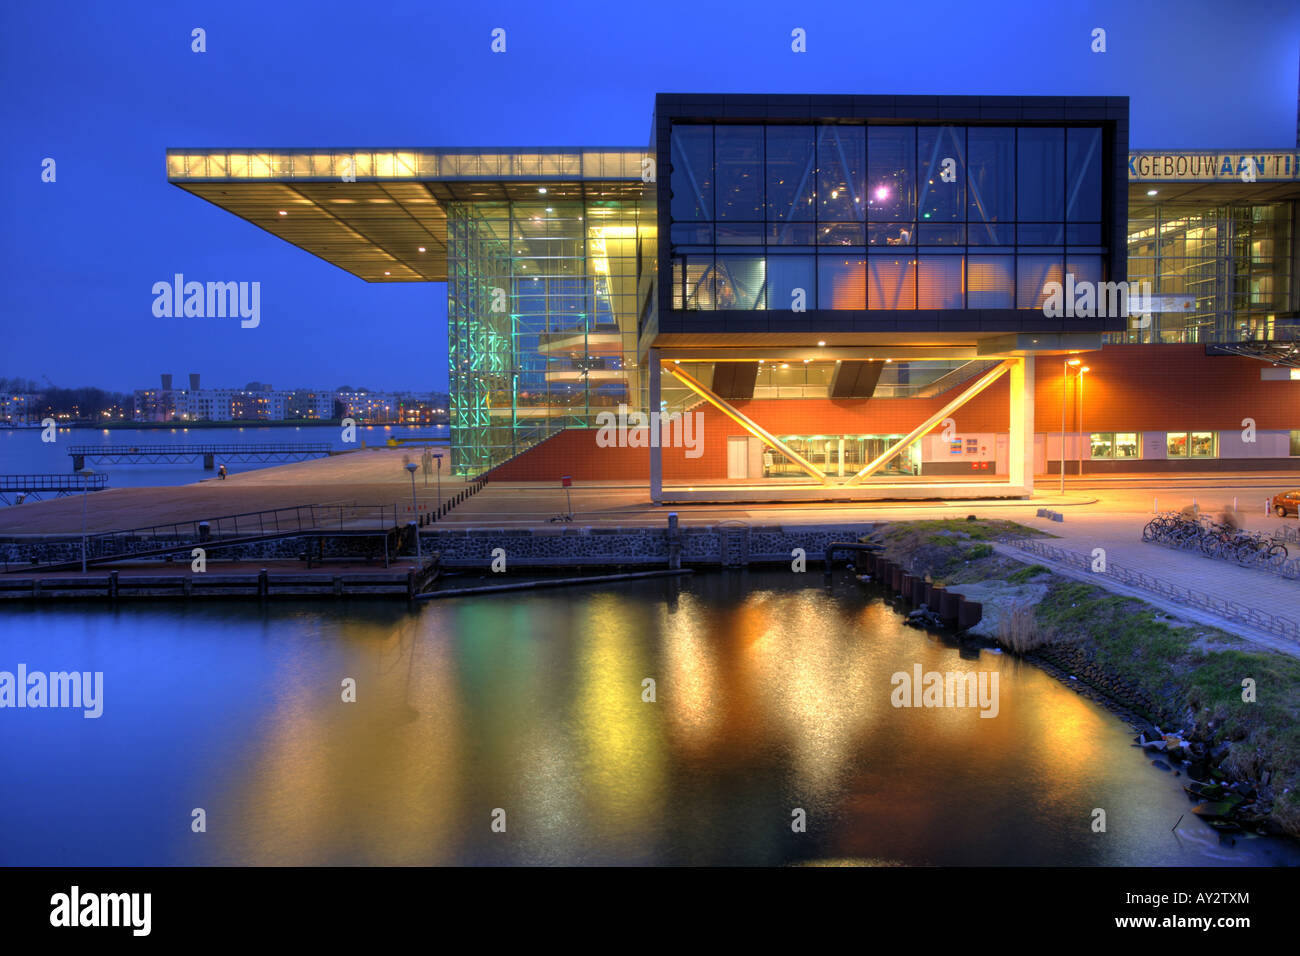 NLD Paesi Bassi Amsterdam Concert hall Muziekgebouw aan TJI Foto Stock